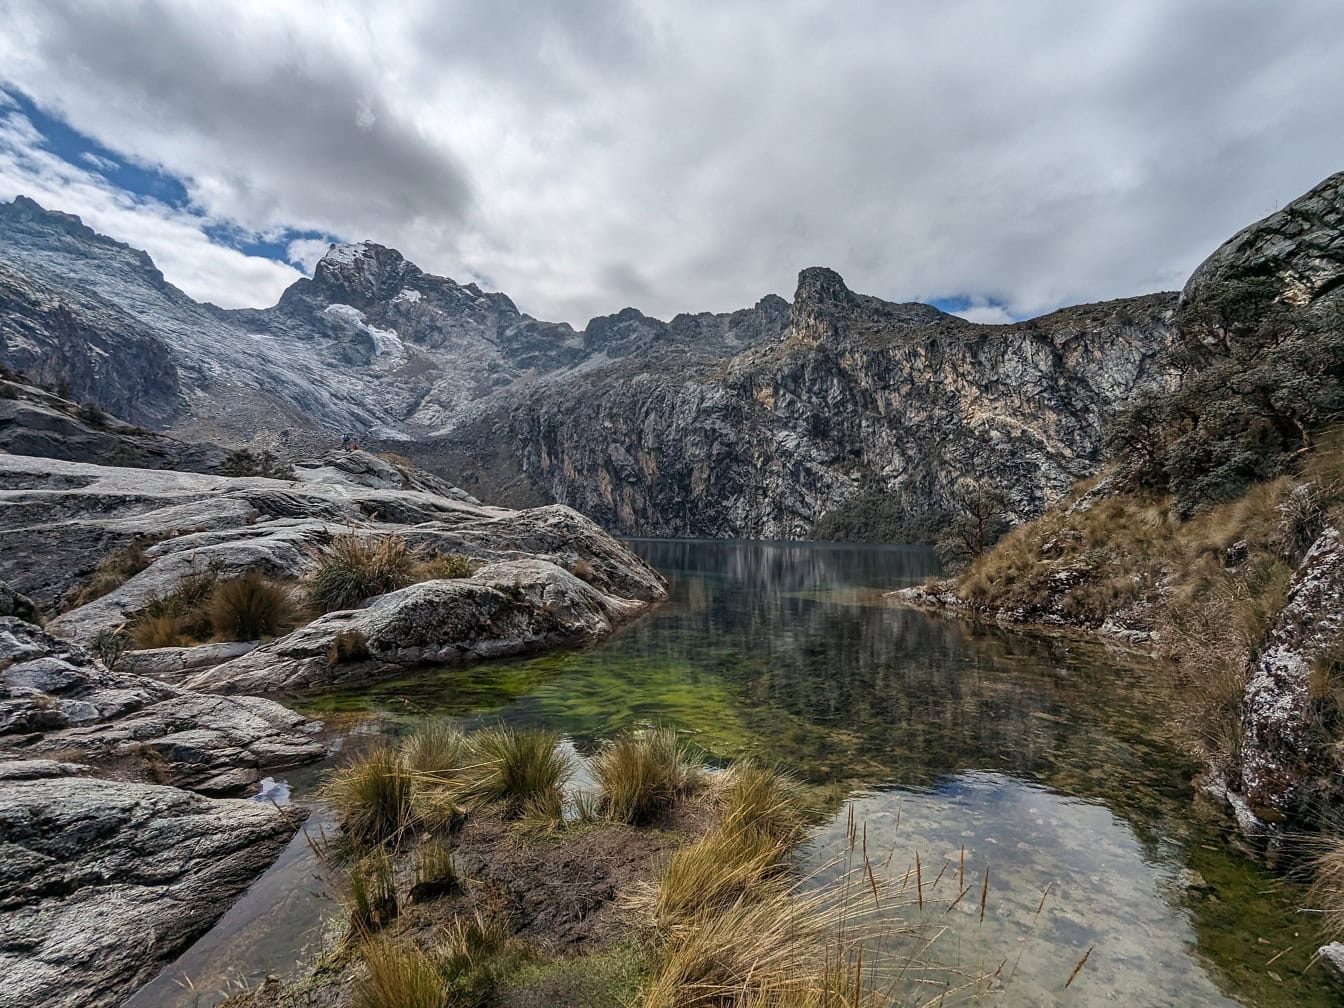 ภูมิทัศน์ของทะเลสาบ Churup และยอดเขาที่เต็มไปด้วยหิมะในอุทยานธรรมชาติในเทือกเขาแอนดีสใกล้ Huaraz ในเปรูทิวทัศน์ที่สวยงามของละตินอเมริกา